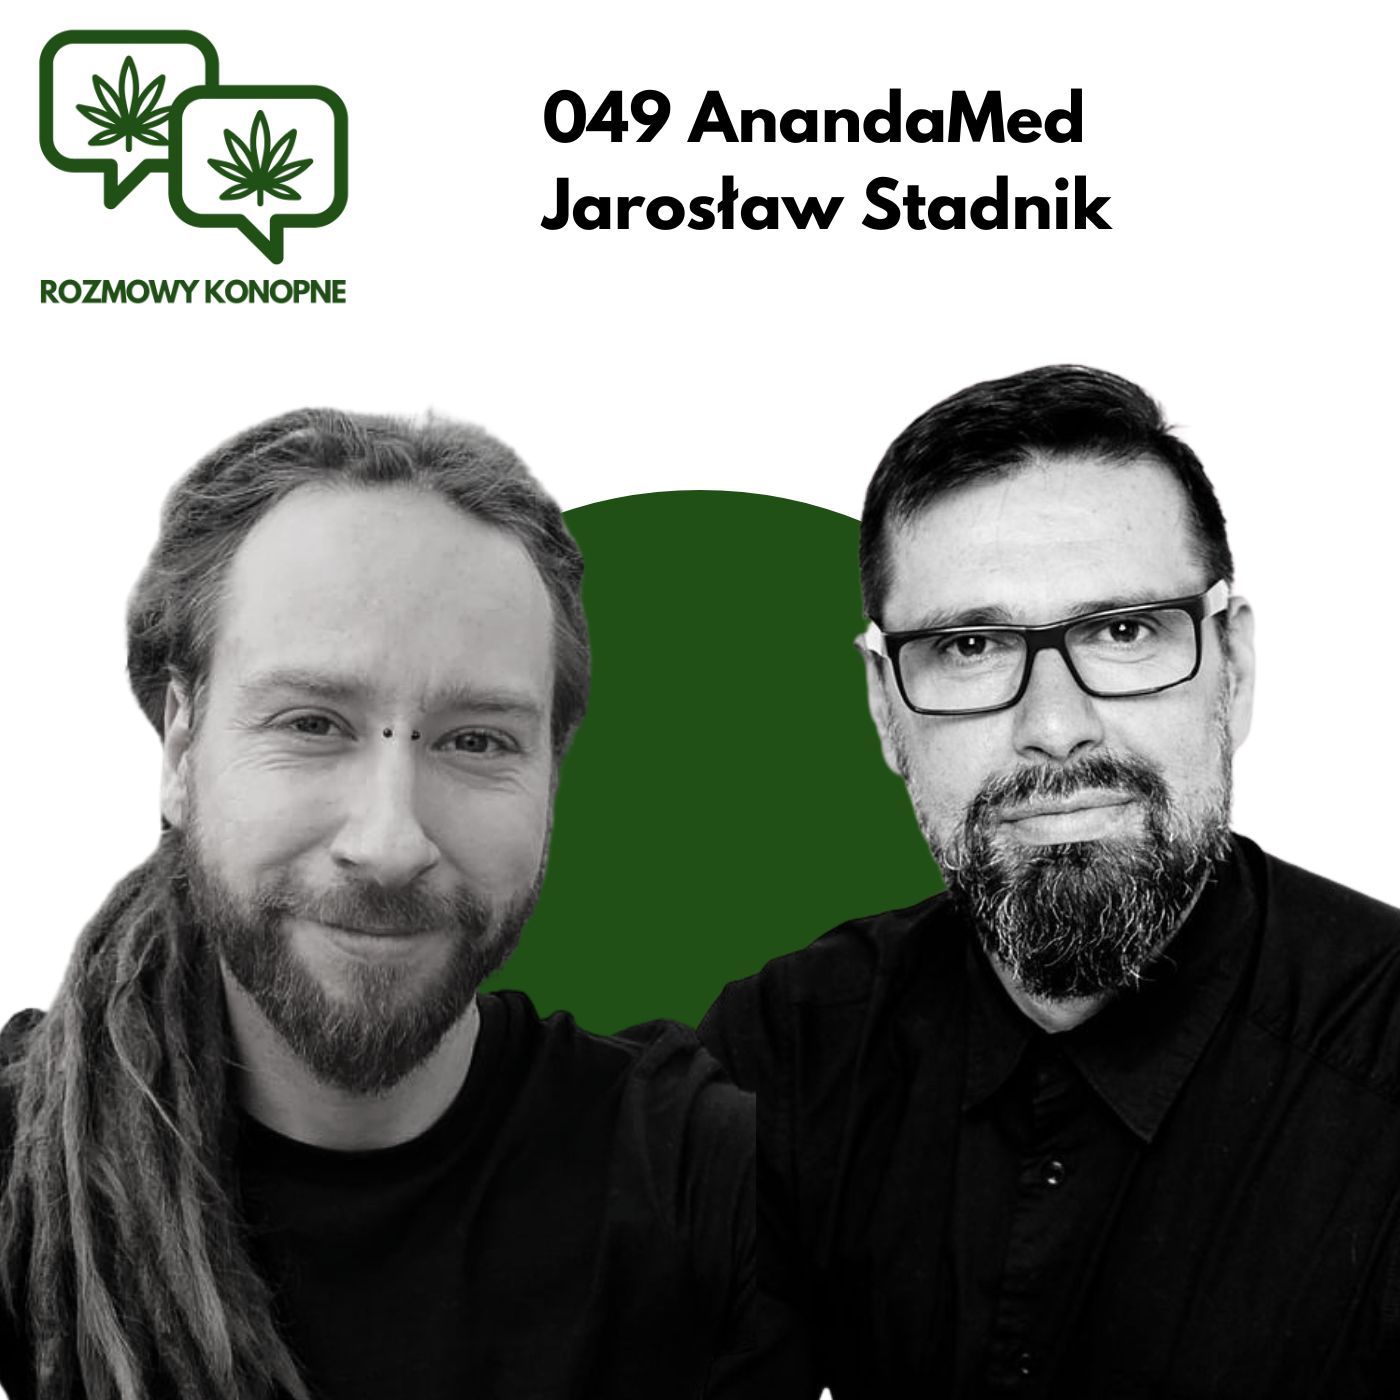 049 Anandamed Jarosław Stadnik